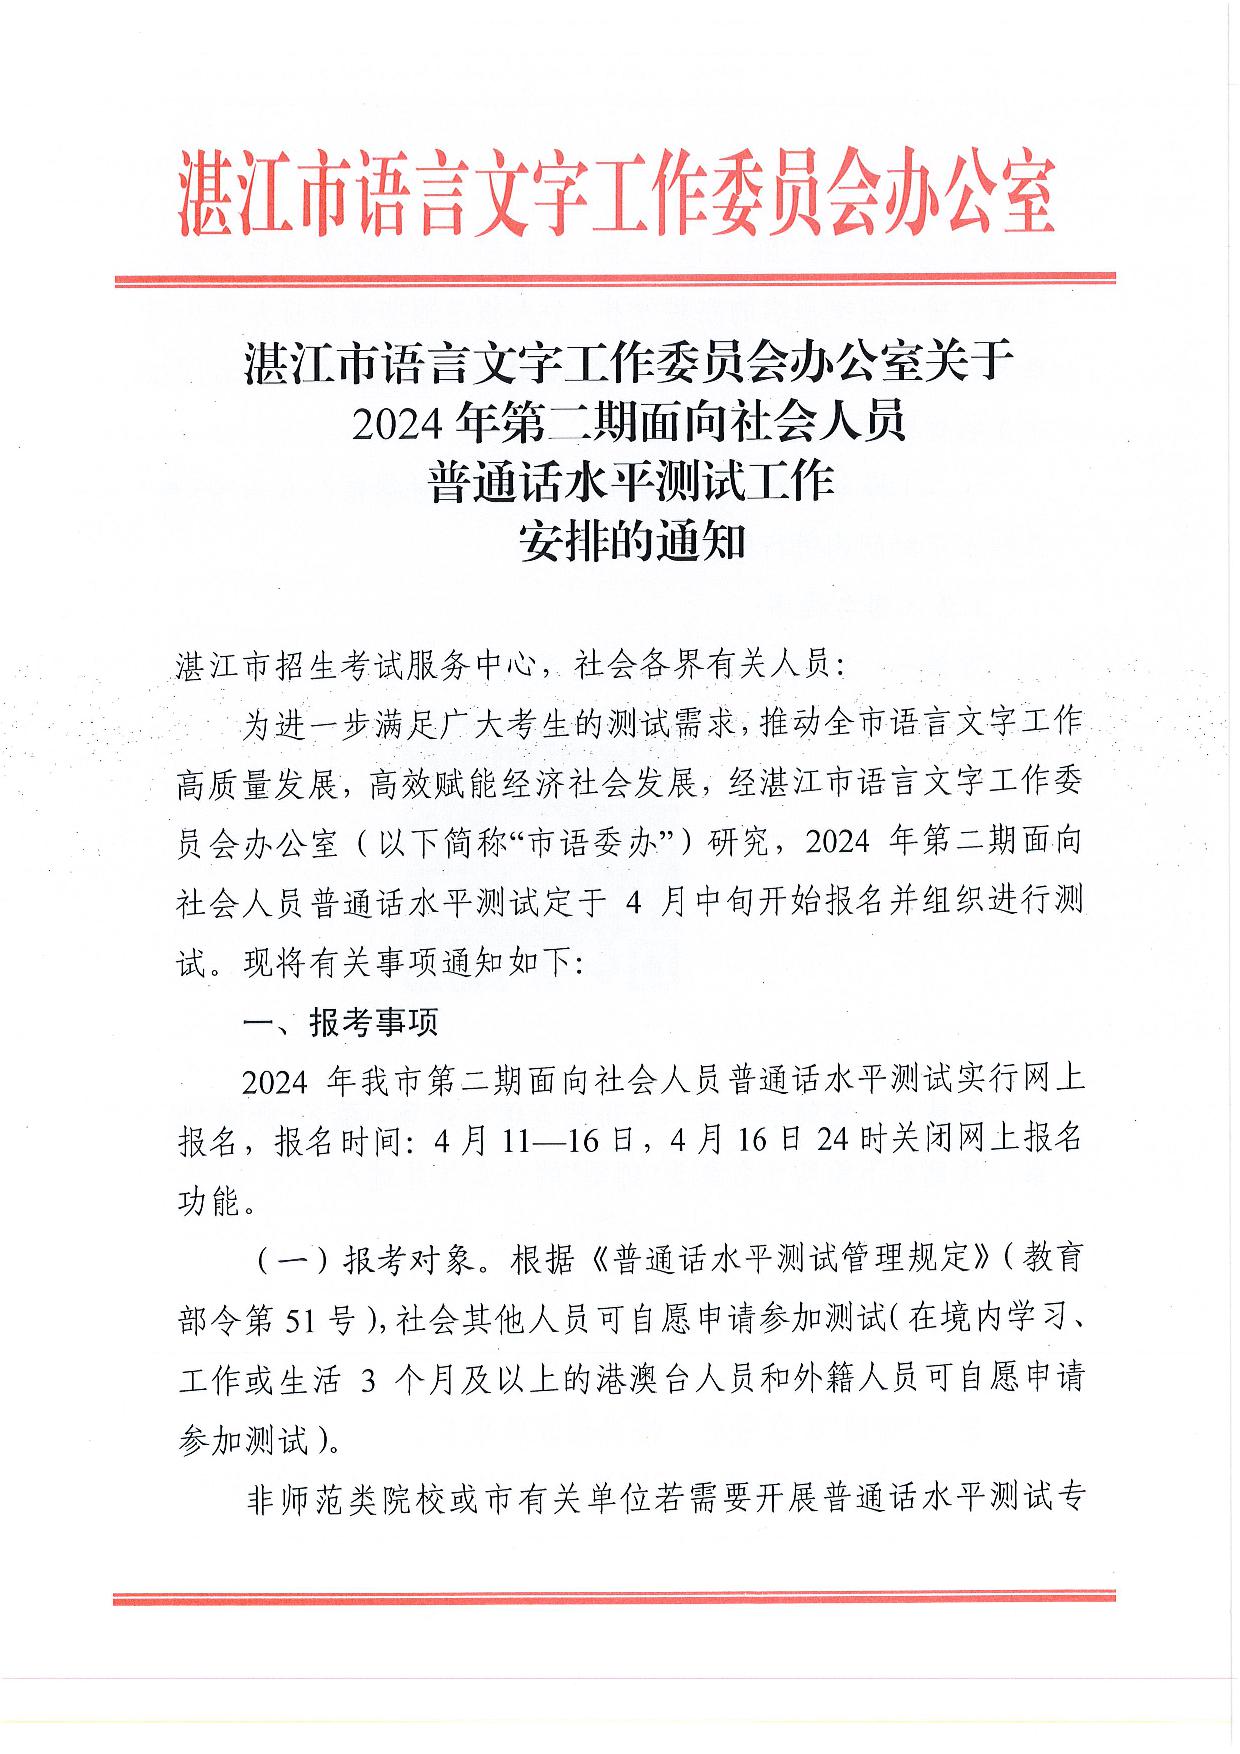 湛江市语言文字工作委员会办公室关于2024年第二期面向社会人员普通话水平测试工作安排的通知-001.jpg